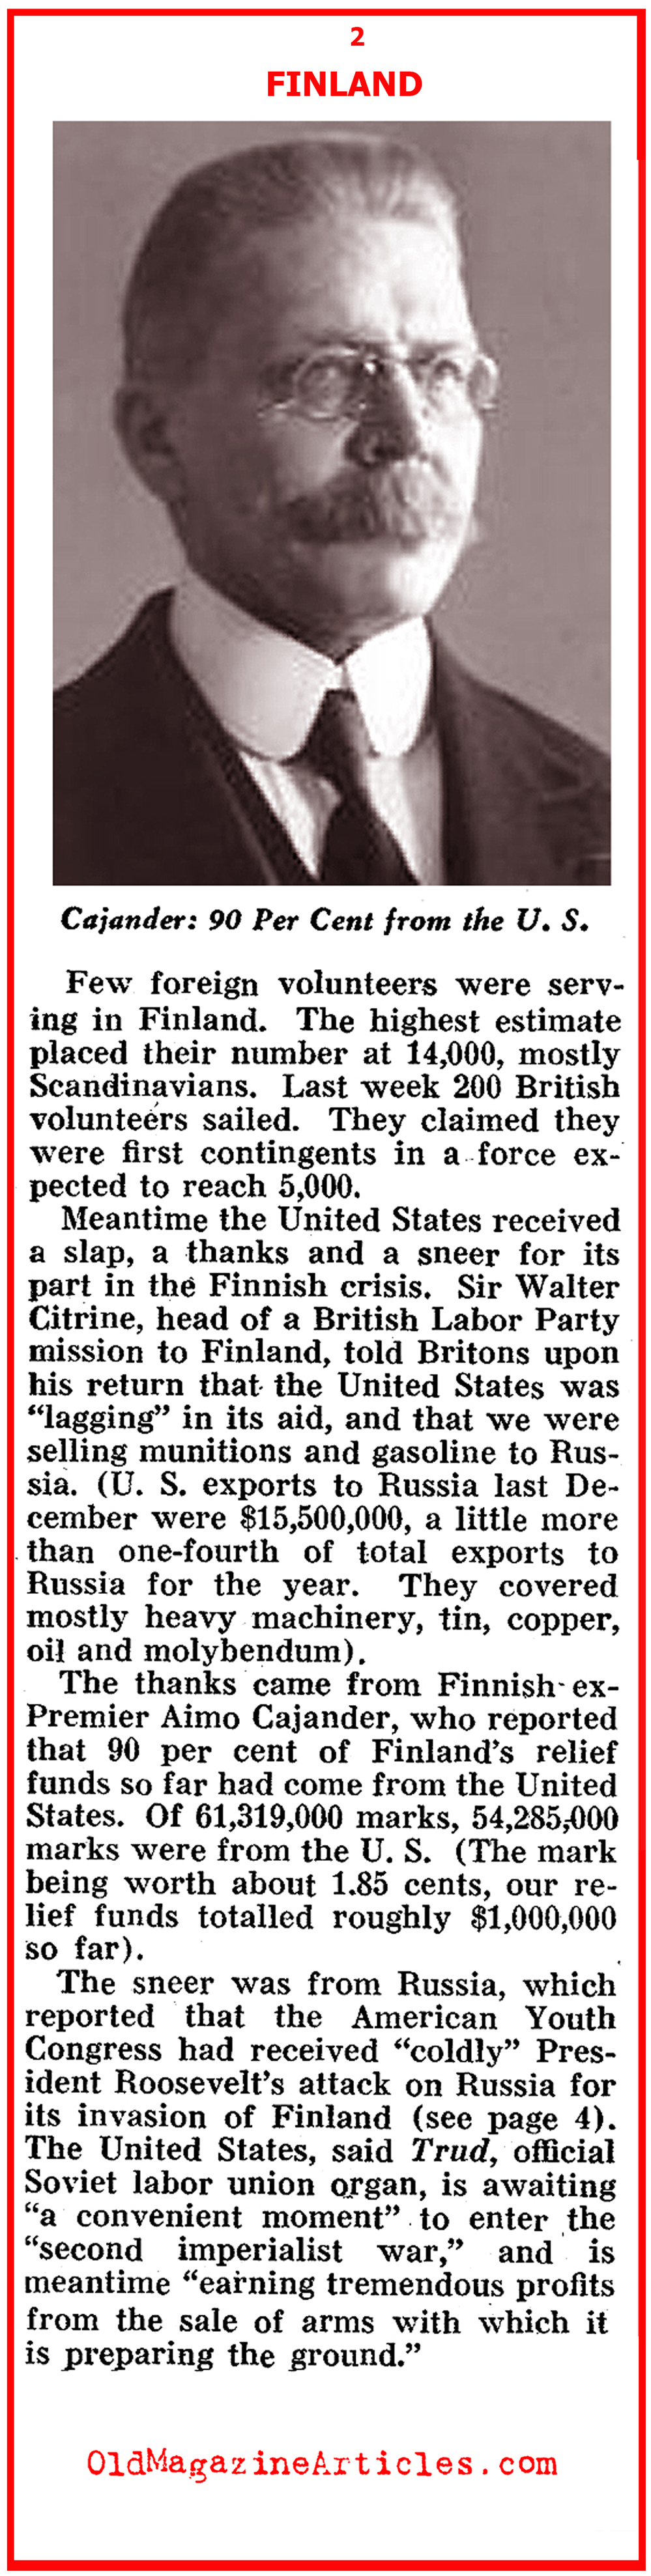 The Soviet Invasion of Finland (Pathfinder Magazine, 1940)